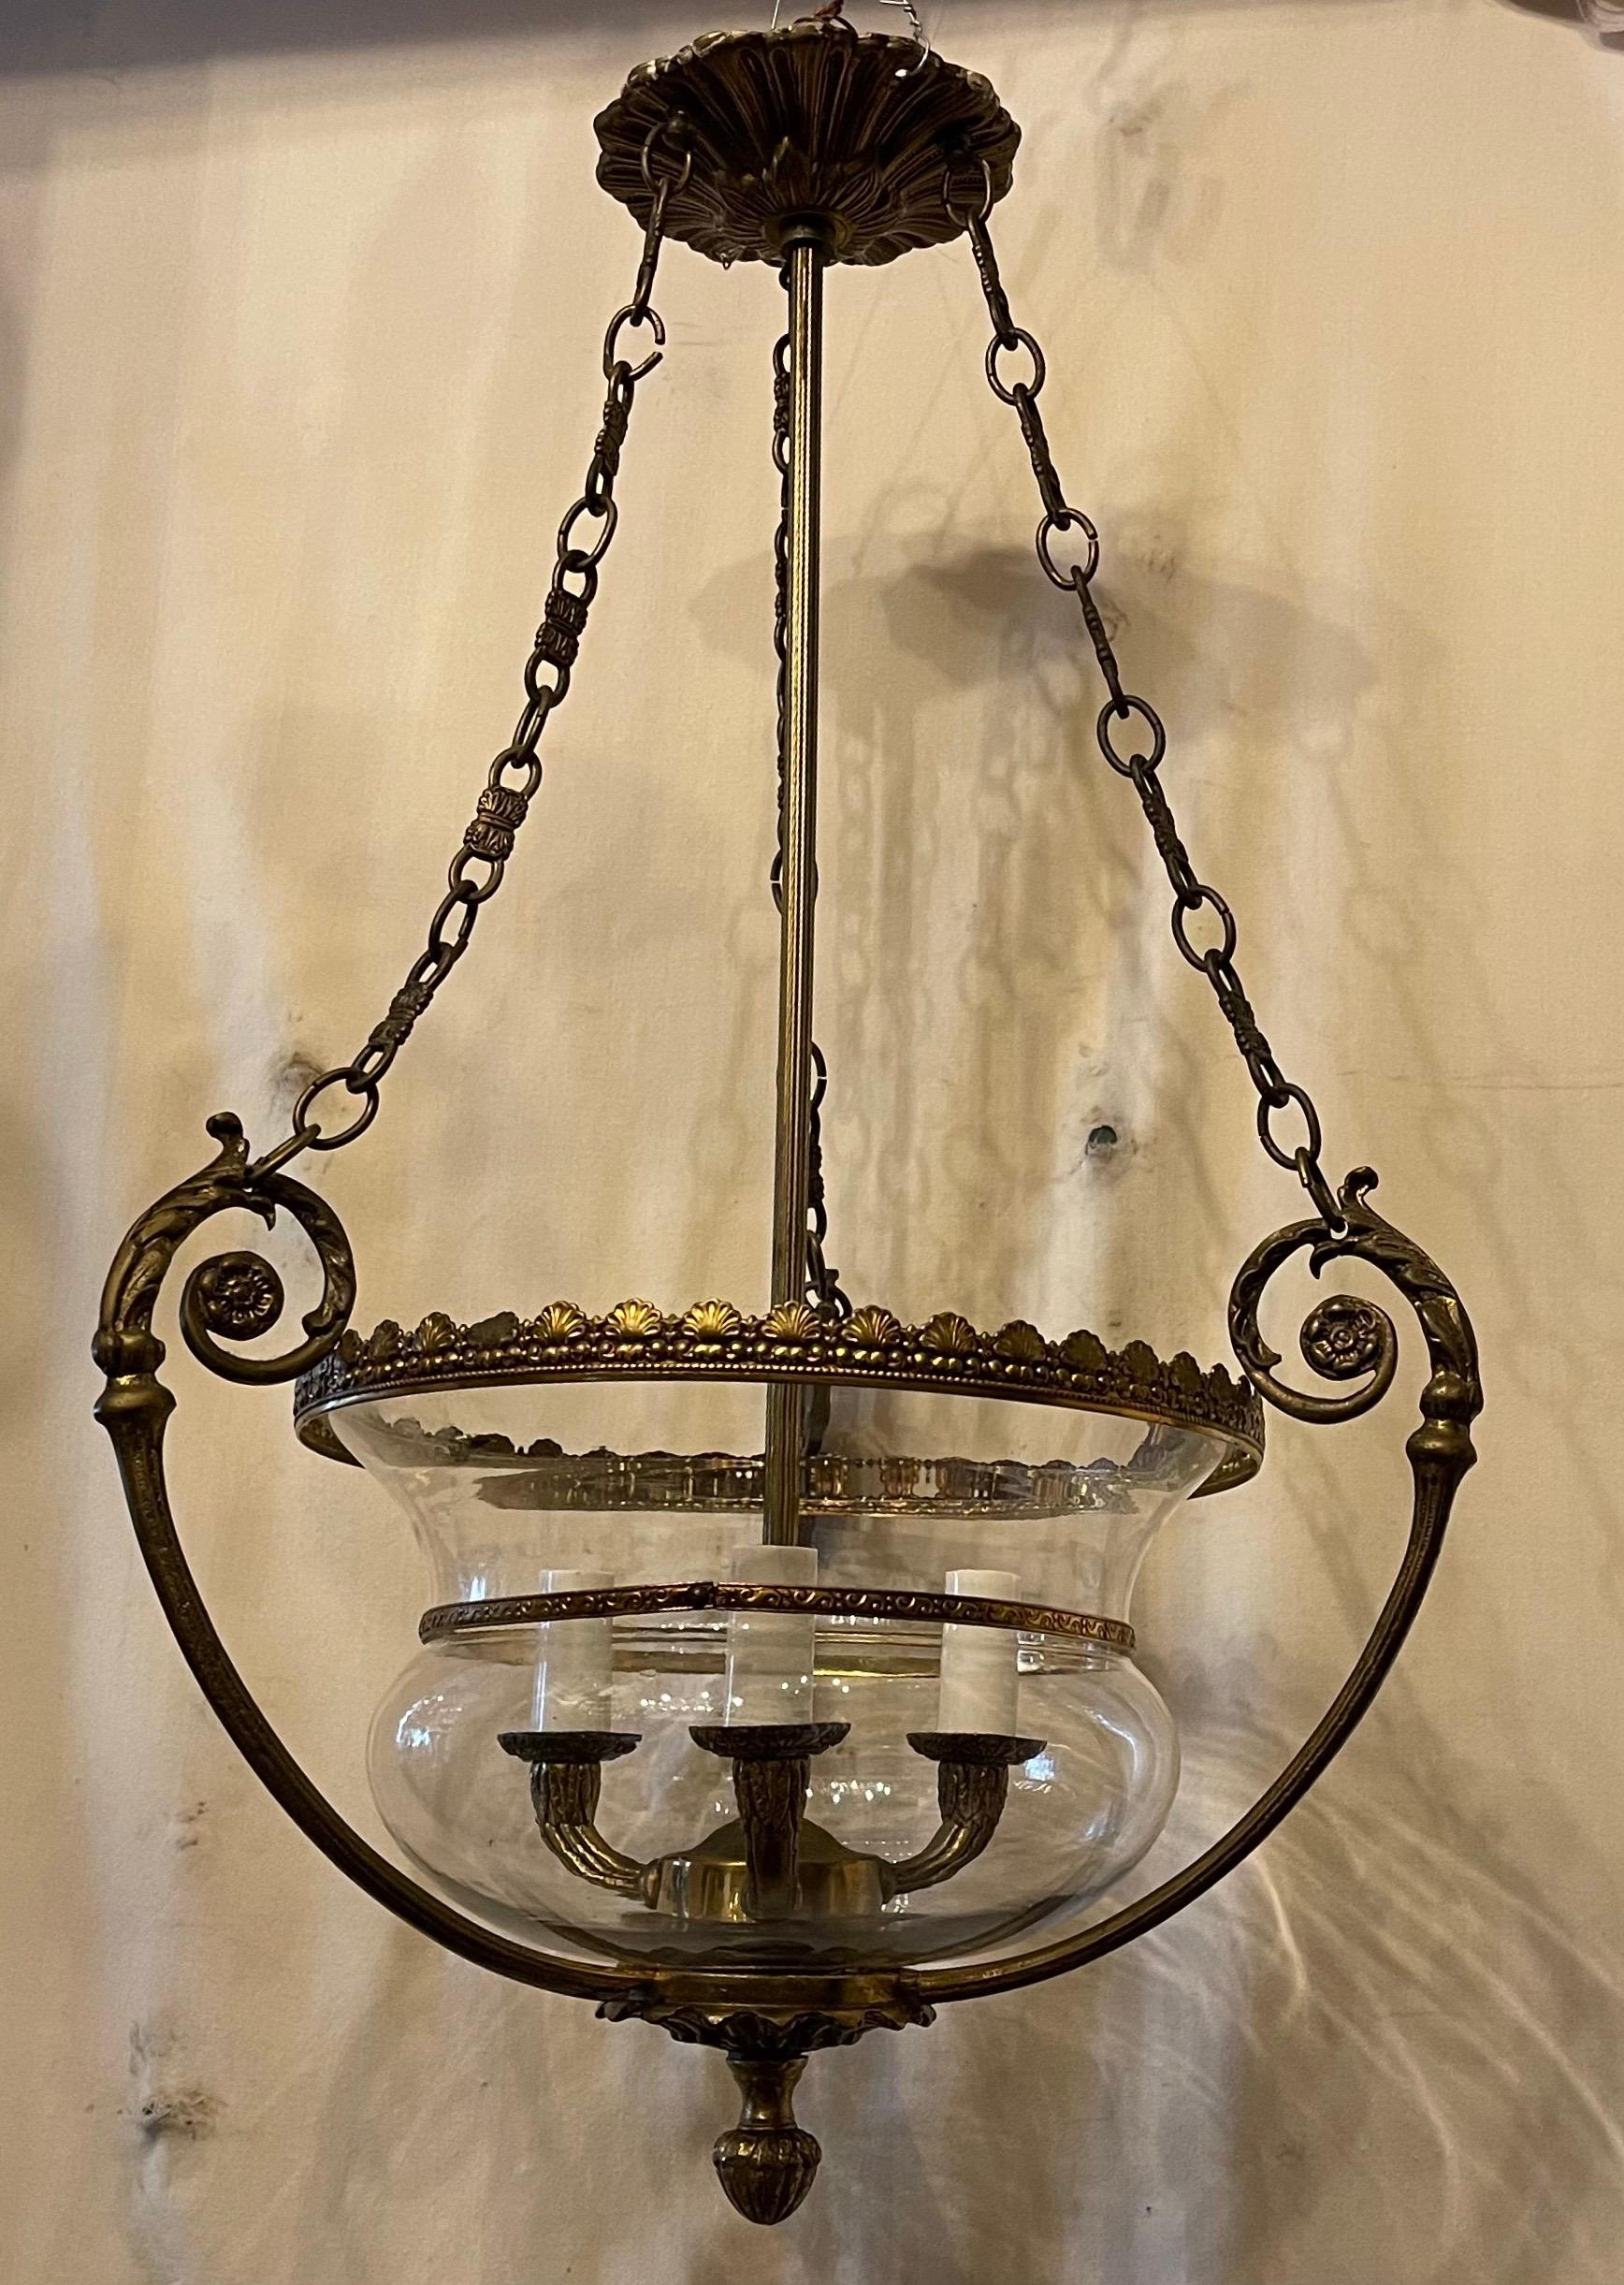 Regency Wonderful French Semi Flush Mount Bronze Glass Bell Lantern Chandelier Fixture